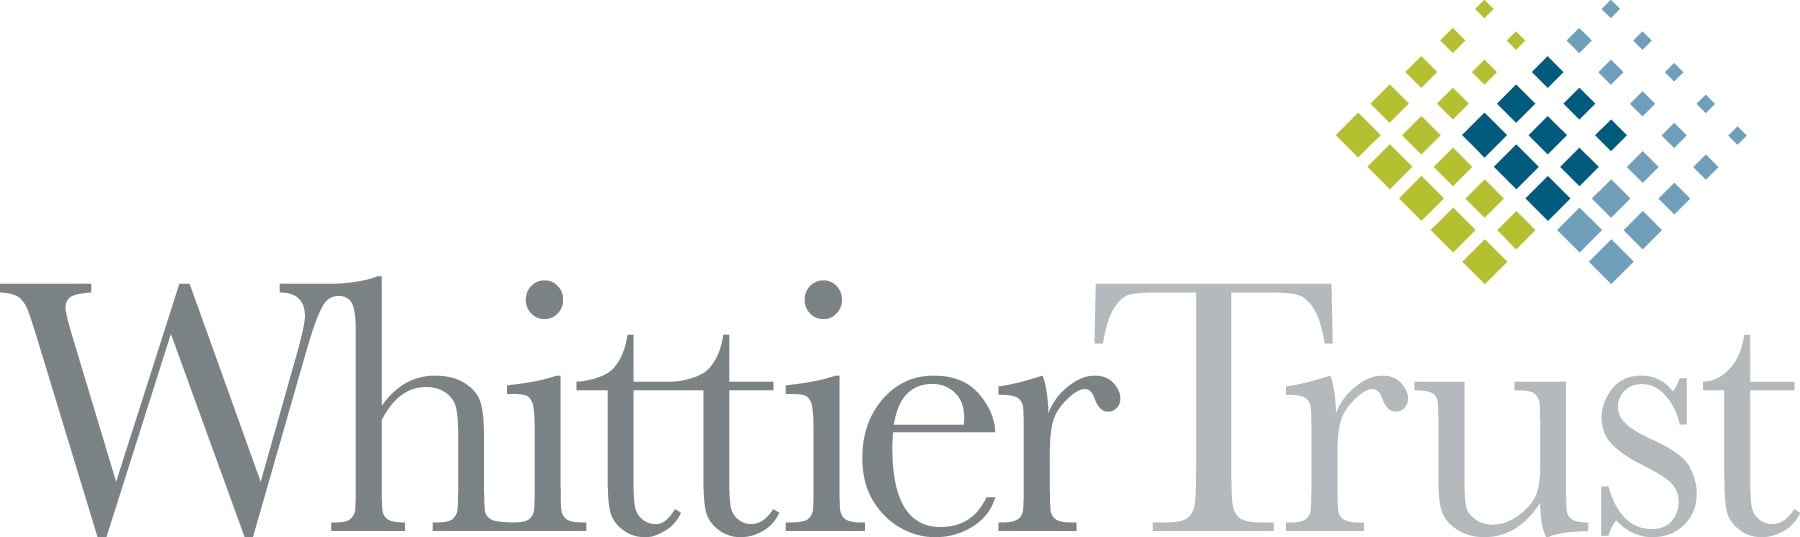 Whitter-Trust-Logo